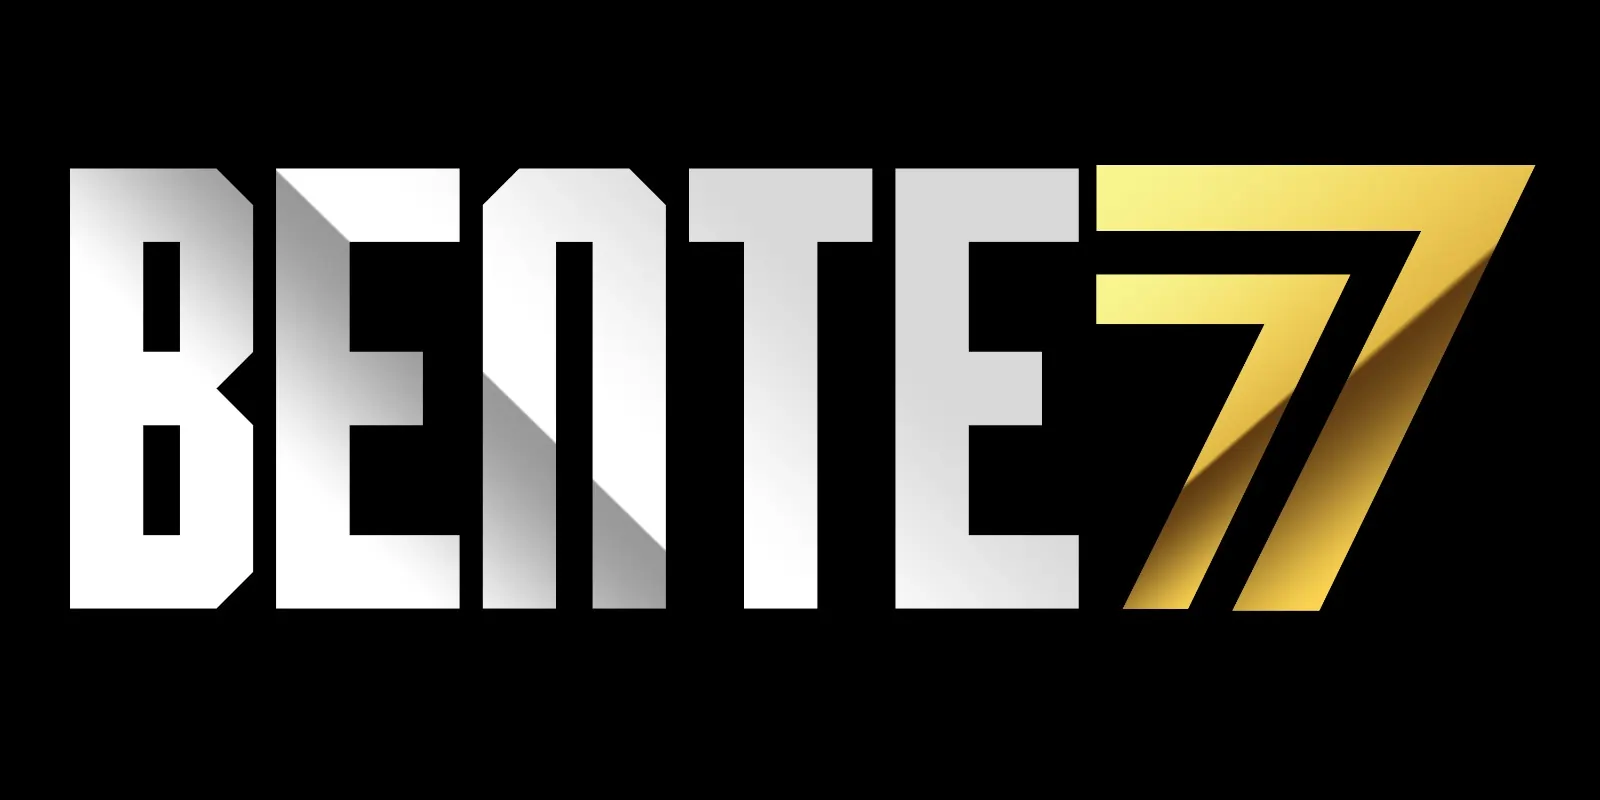 bente77 app download